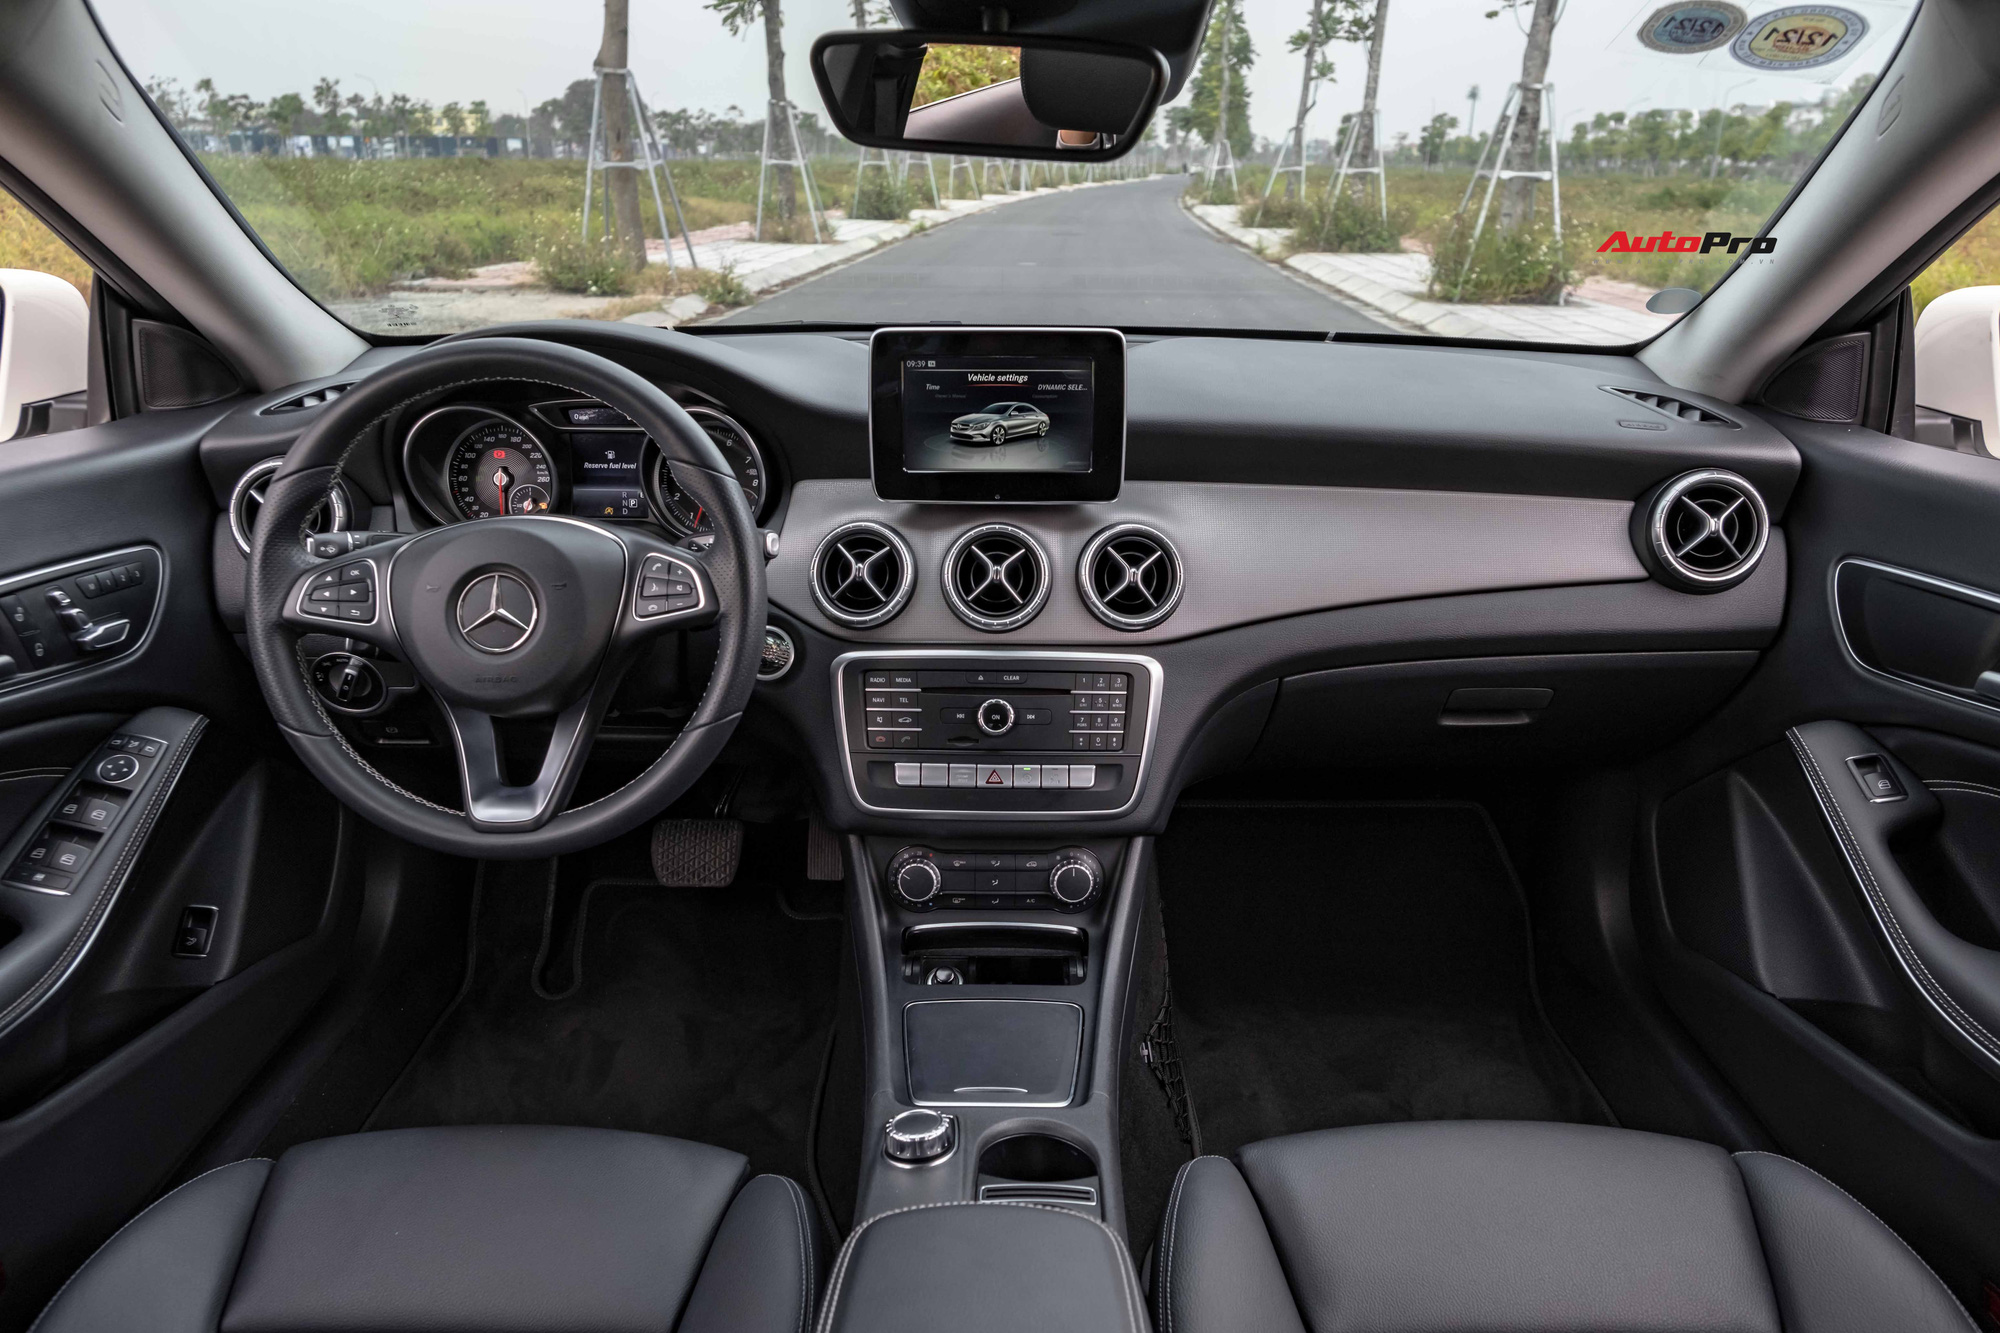 Mới chạy 24.000km, chủ xe bán Mercedes-Benz CLA 200 với giá còn thấp hơn Toyota Camry đập hộp tới gần 100 triệu đồng - Ảnh 4.